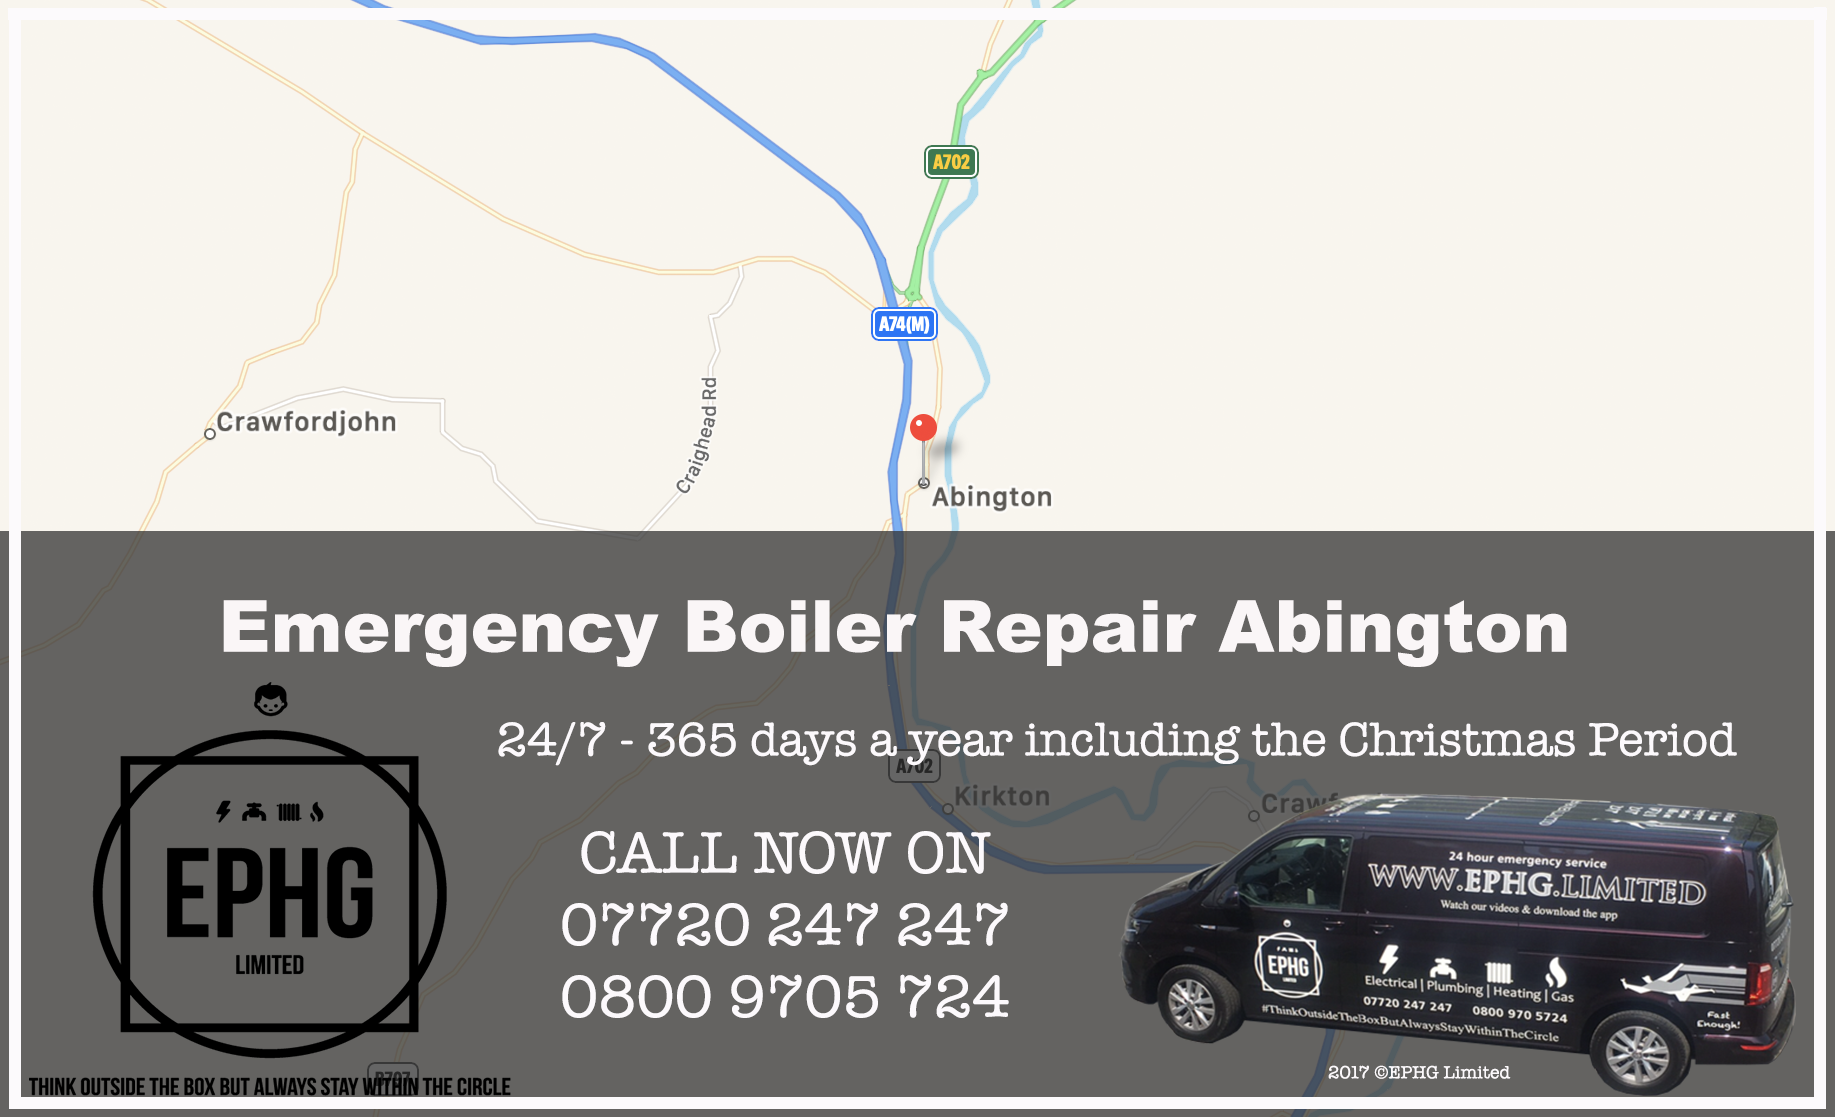 24 Hour Emergency Boiler Repair Abingdon